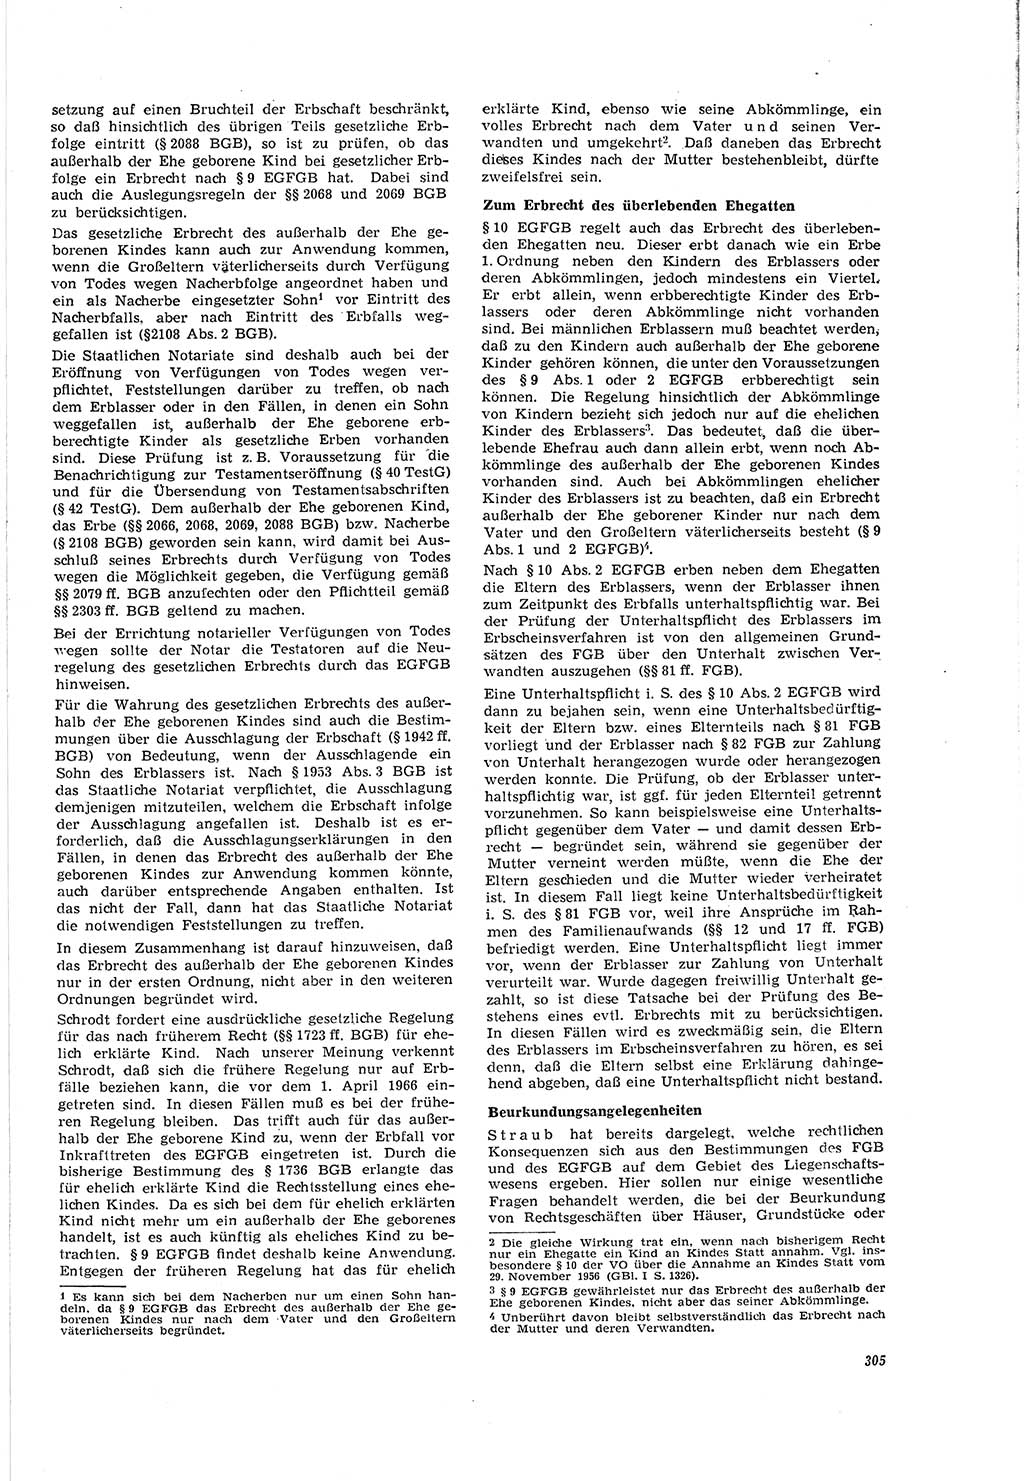 Neue Justiz (NJ), Zeitschrift für Recht und Rechtswissenschaft [Deutsche Demokratische Republik (DDR)], 20. Jahrgang 1966, Seite 305 (NJ DDR 1966, S. 305)